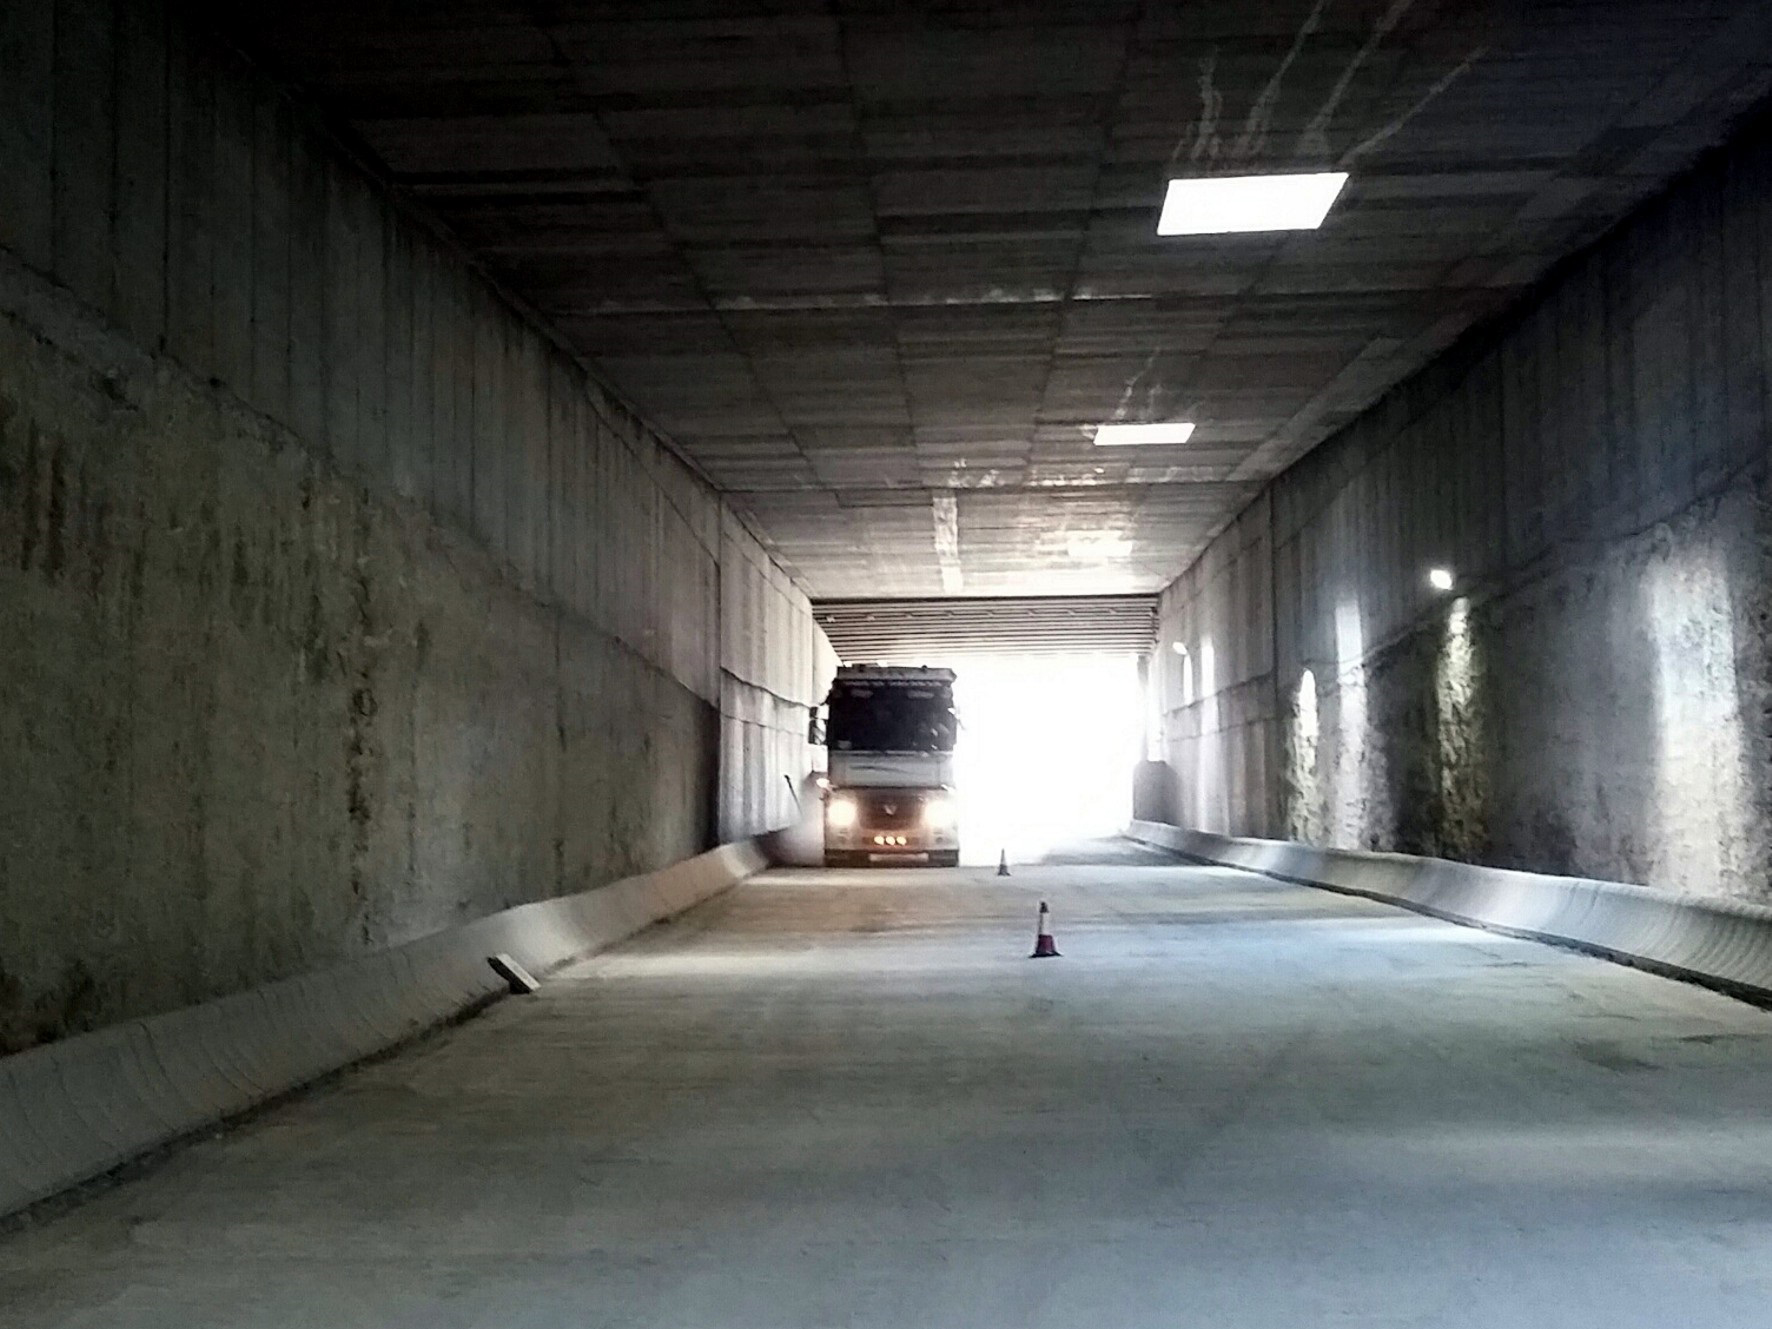 Abierto al trfico de camiones el paso subterrneo de acceso al puerto de Garrucha